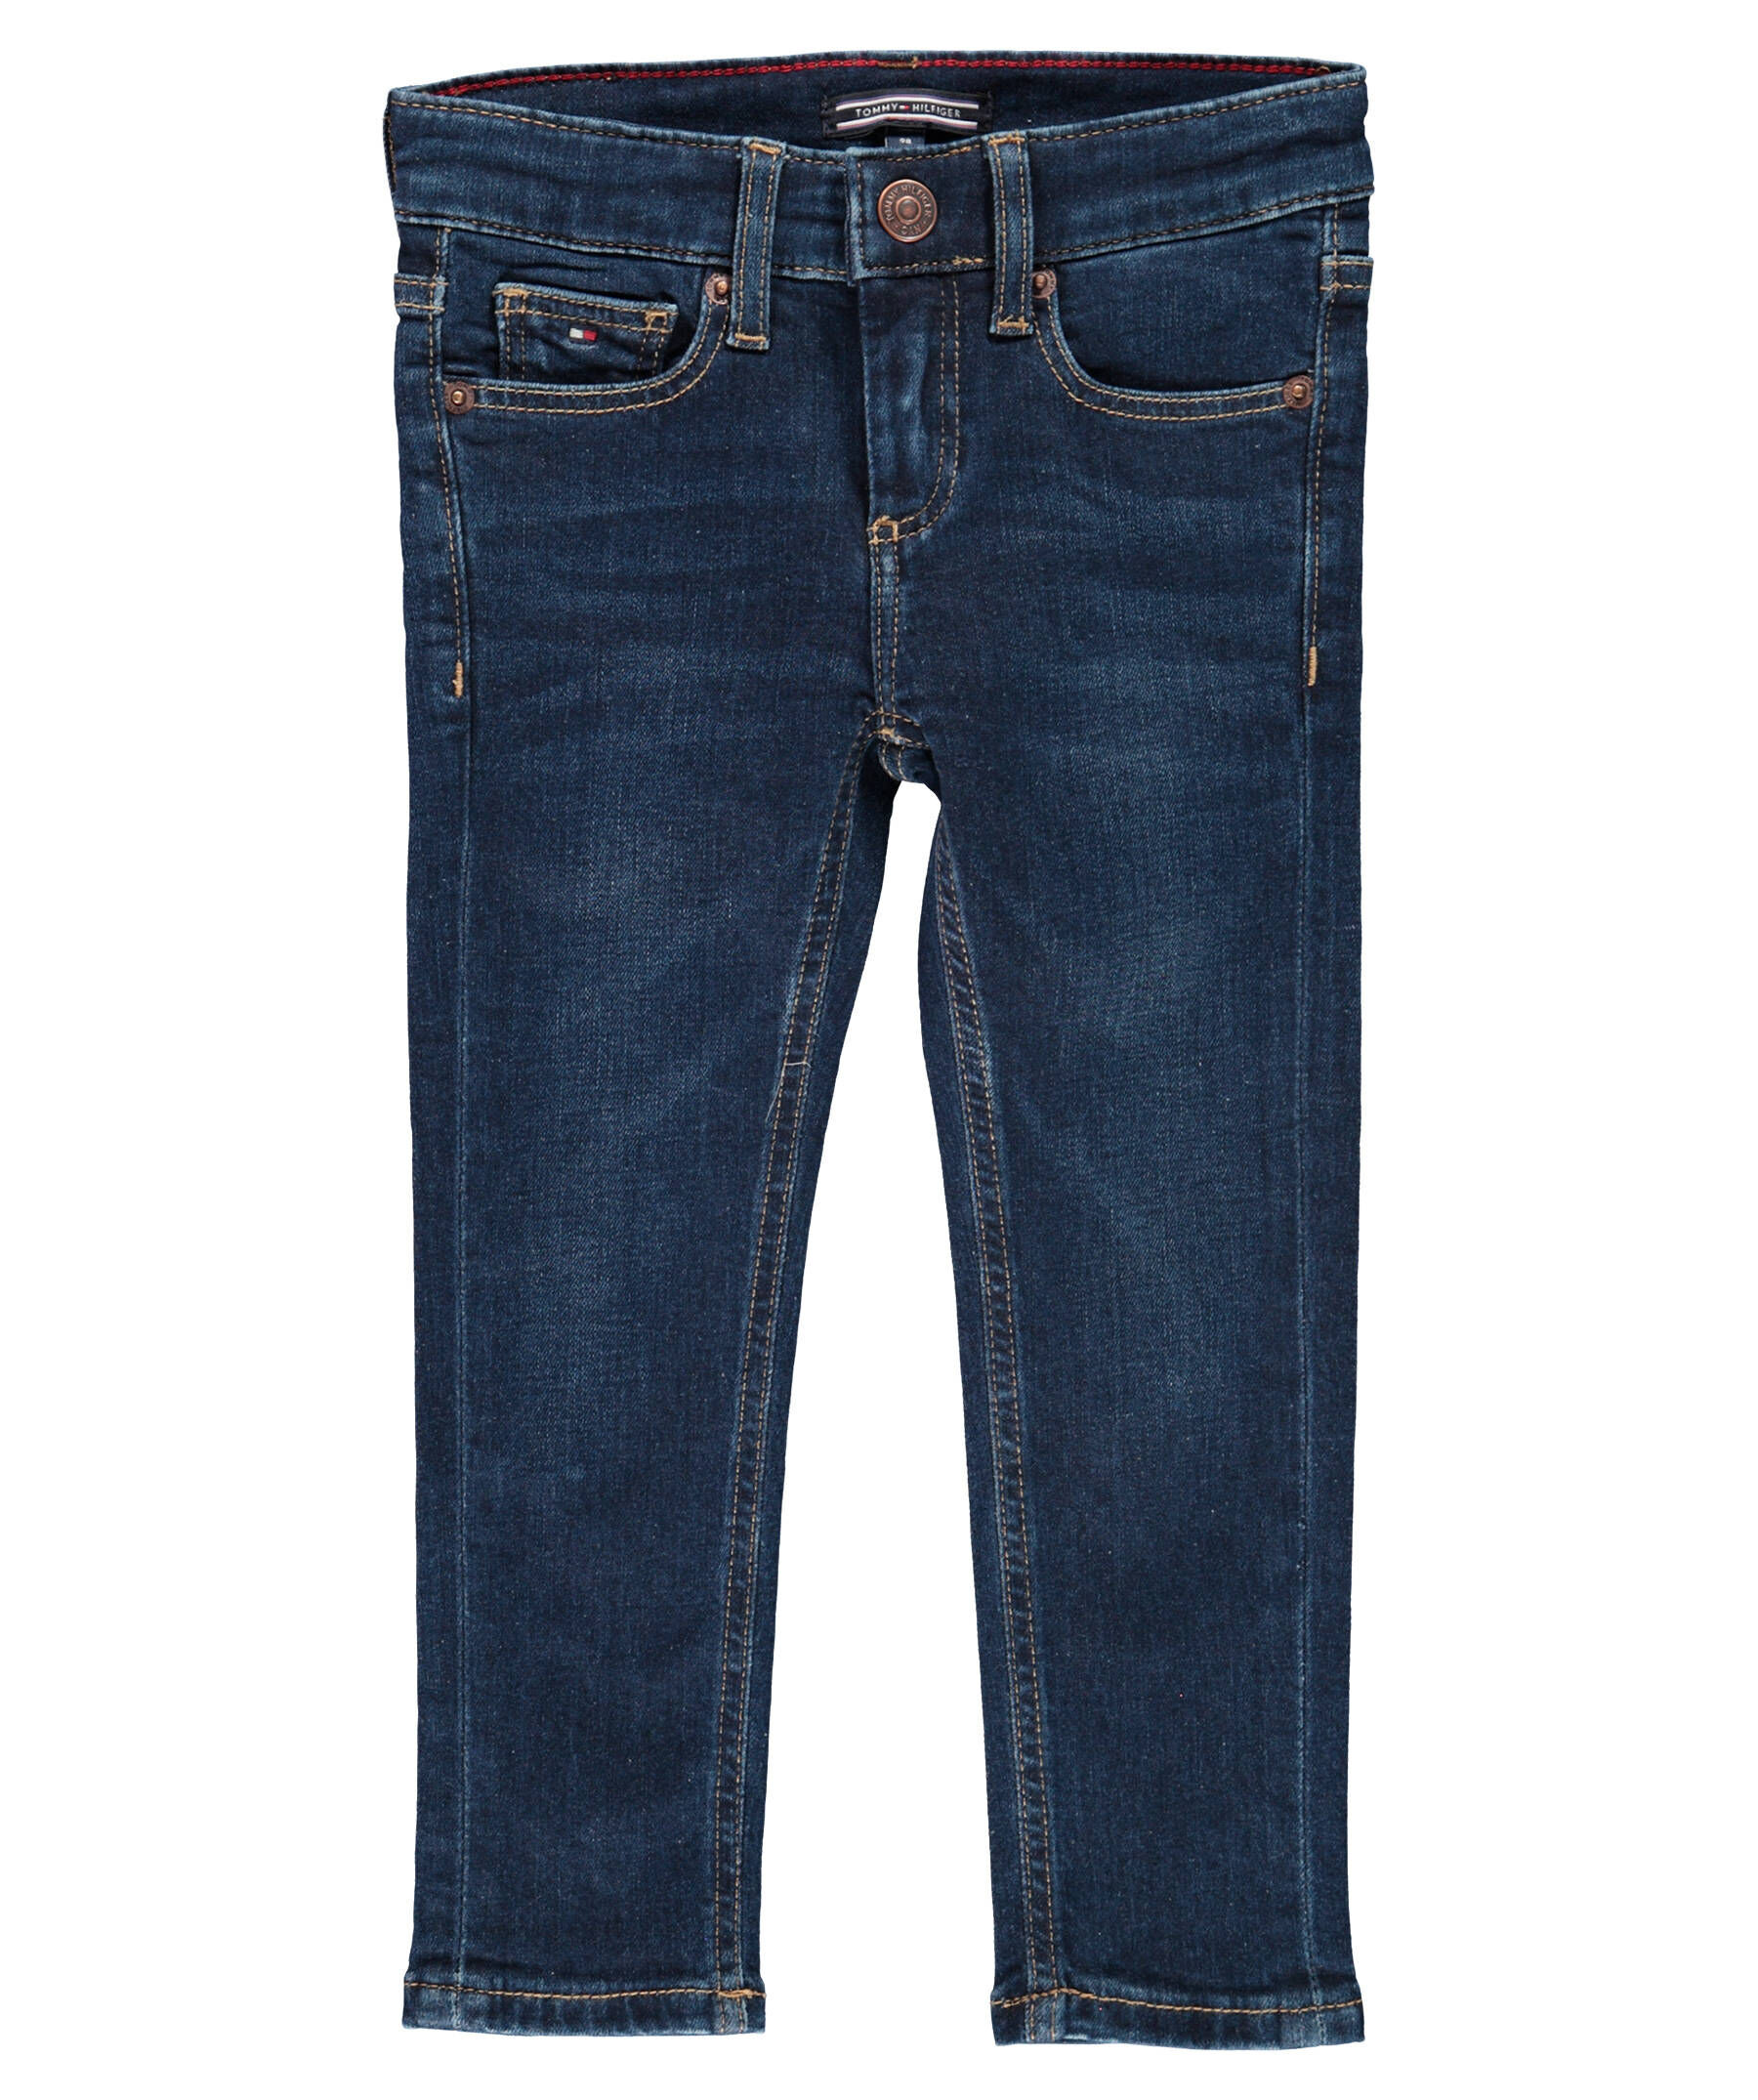 Neu TOMMY HILFIGER Jeans Scanton SLIM für Jungen 6059700 für Jungen blau 